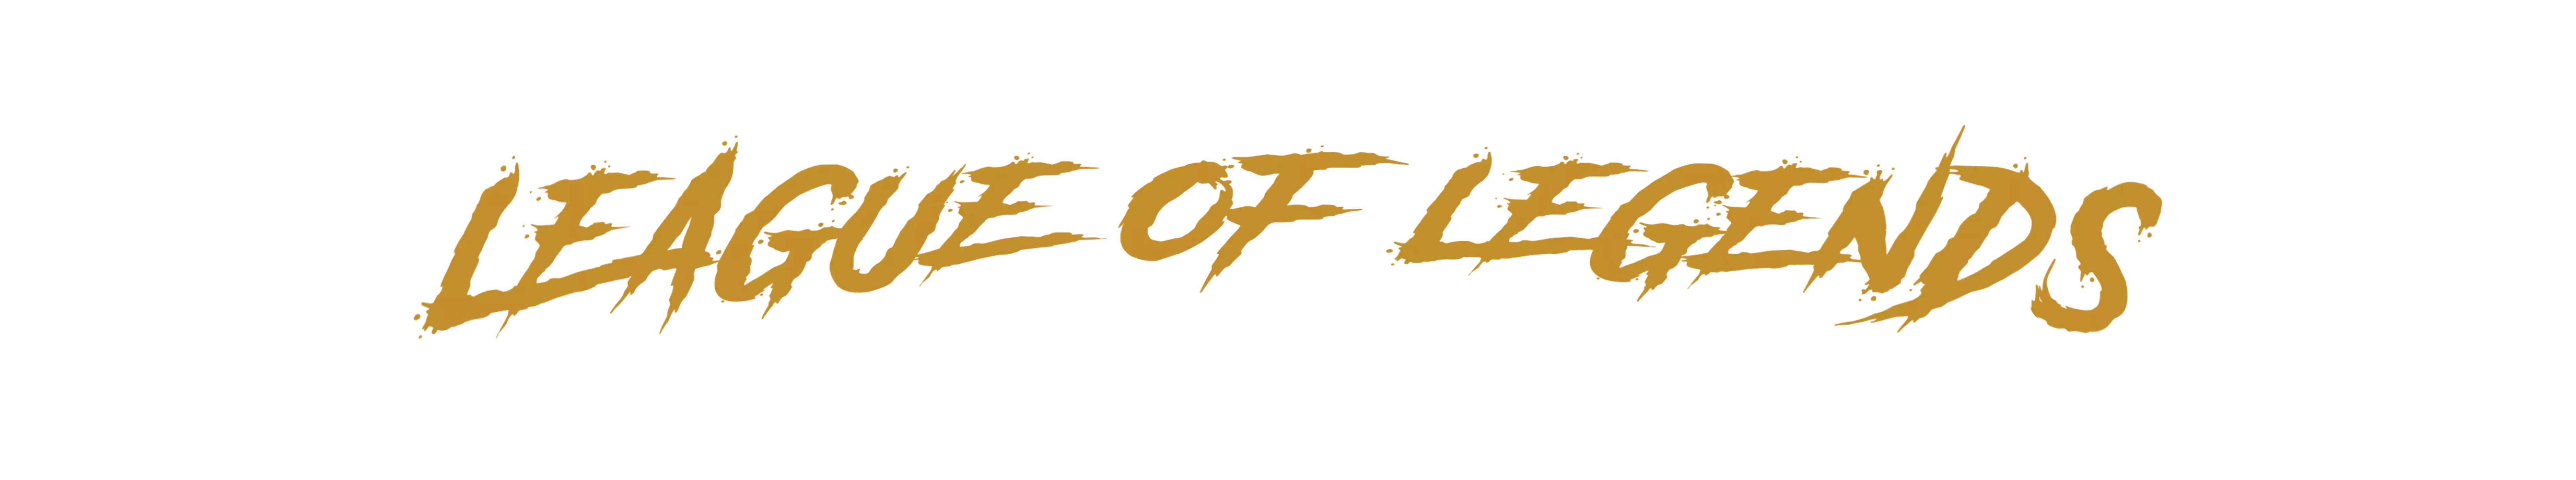 logo du jeu league_of_legends